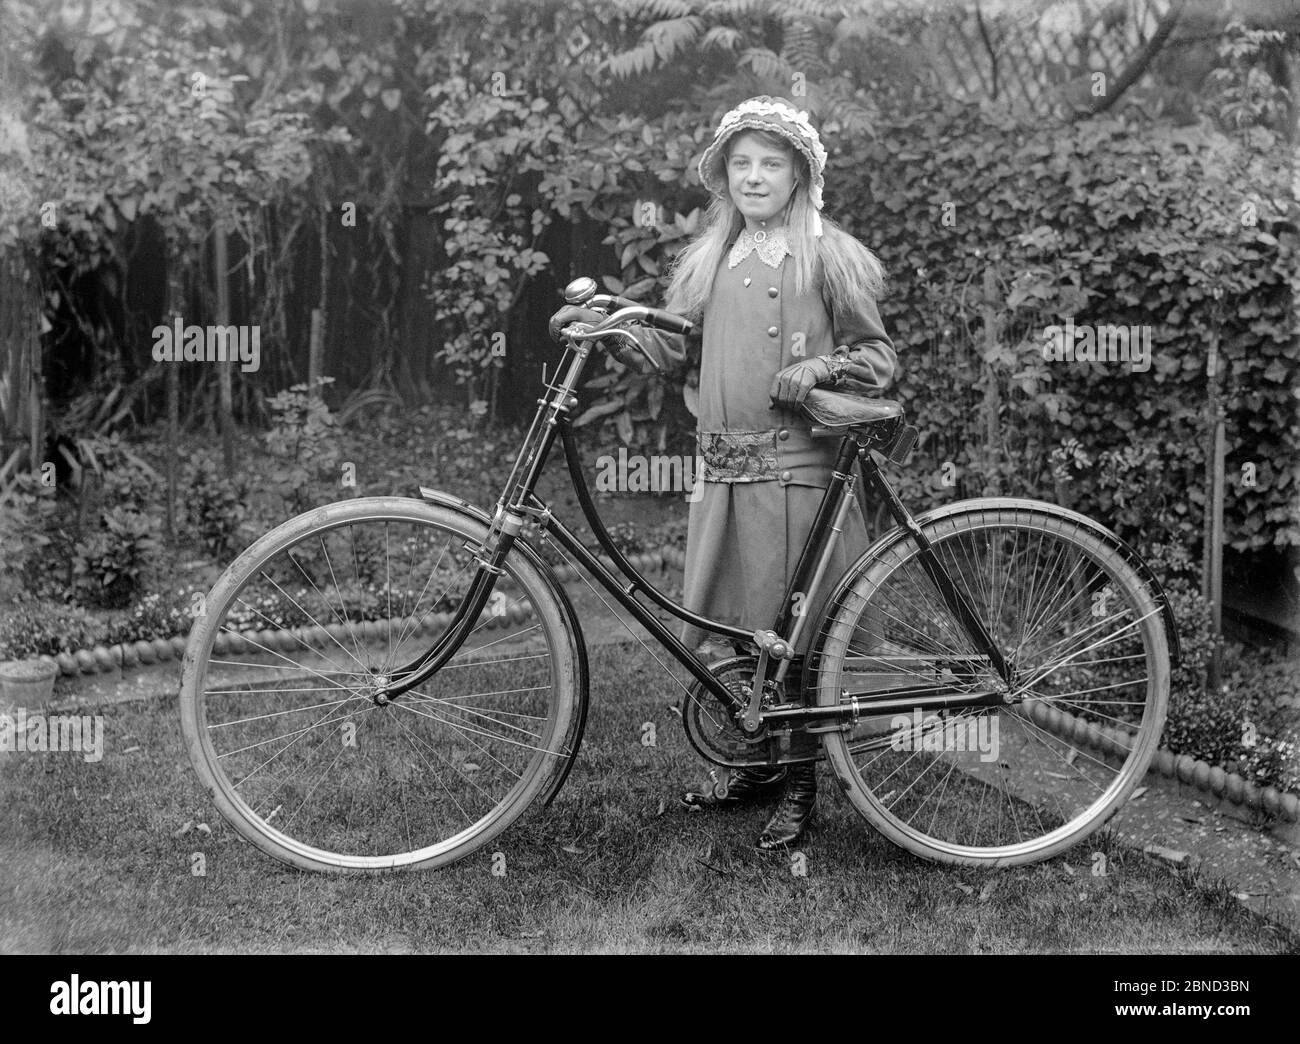 Ein Vintage spätviktorianisches oder frühedwardianisches Schwarz-Weiß-Foto, aufgenommen in England, zeigt ein junges Mädchen mit einem neuen Loop-Rahmen Damenfahrrad. Das Foto wird im Garten eines Hauses aufgenommen. Mädchen trägt schöne modische Kleidung, mit einer Haube und Lederhandschuhe. Stockfoto